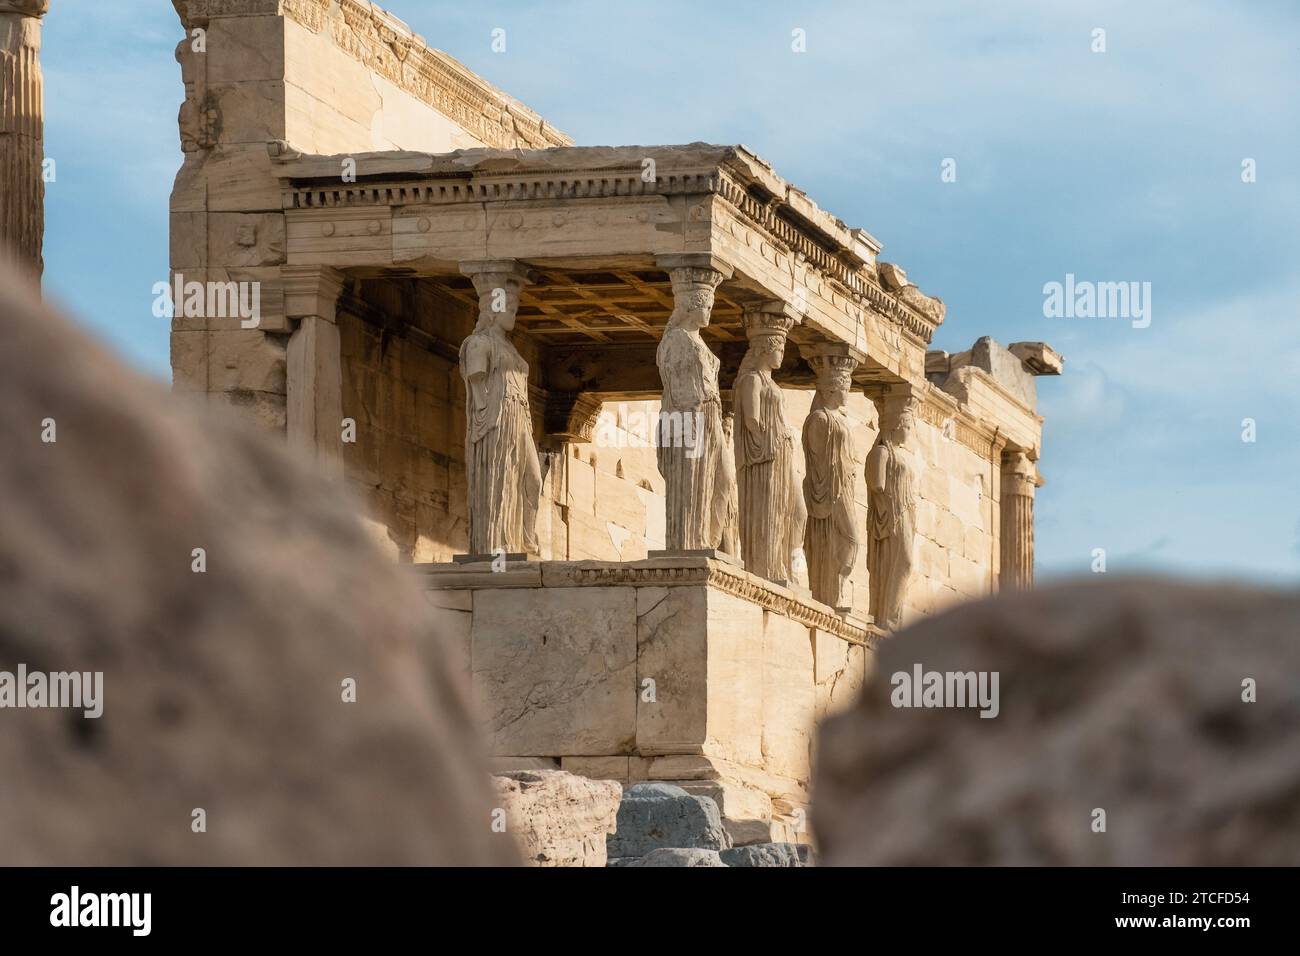 Statues de cariatides au temple d'Erechtheion dans l'Acropole d'Athènes, Grèce. Erechtheum est un ancien temple ionique grec d'Athéna Polias en Grèce Banque D'Images